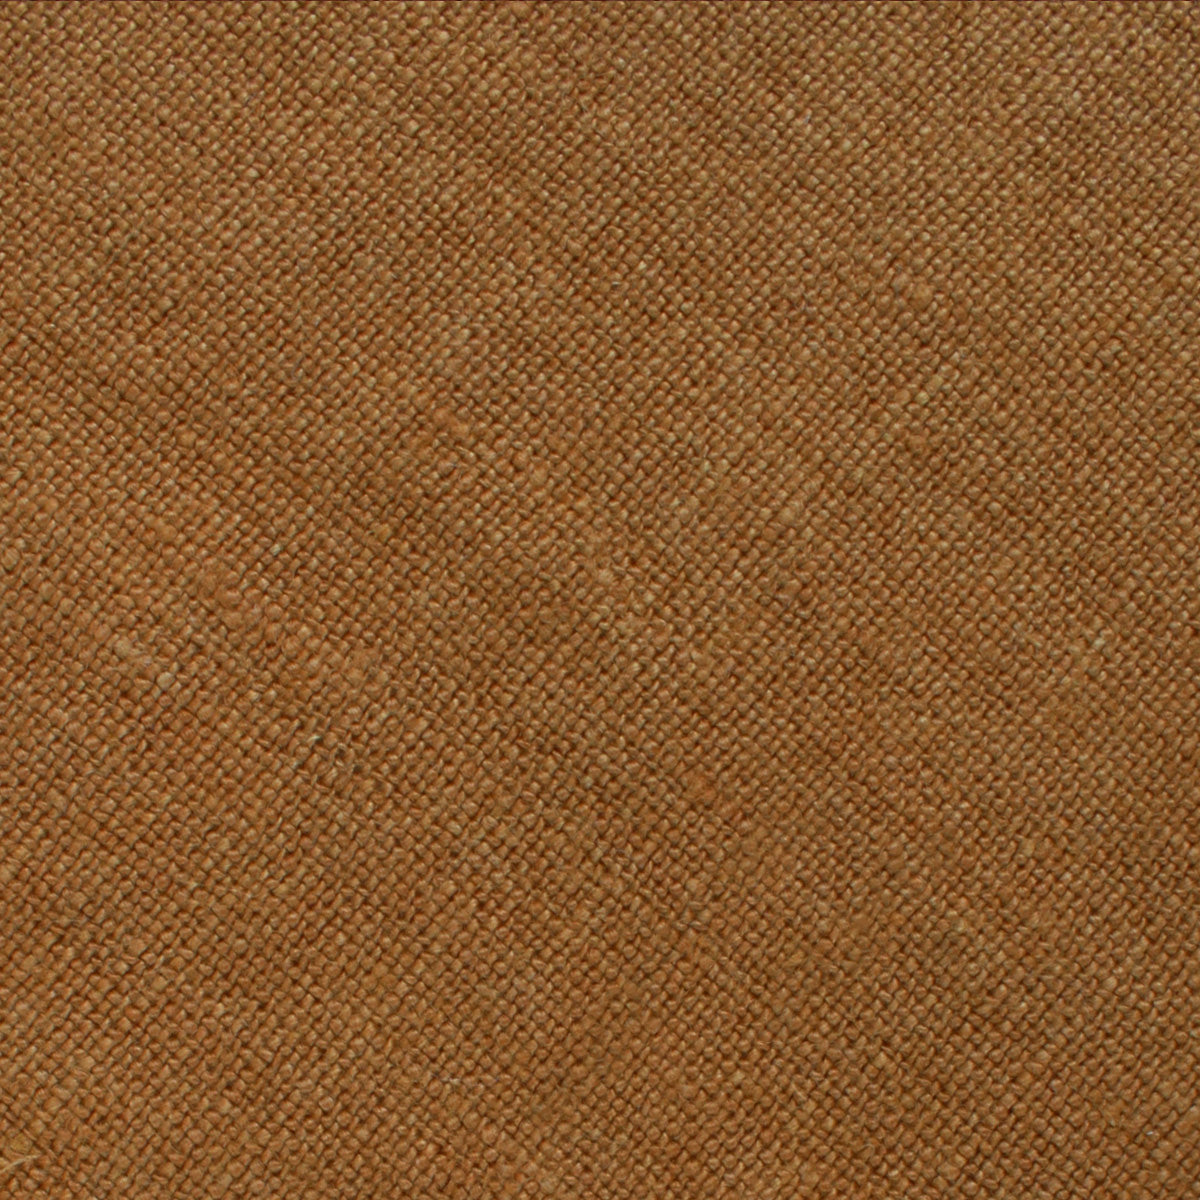 Dark Mustard Brown Linen Pocket Square Fabric